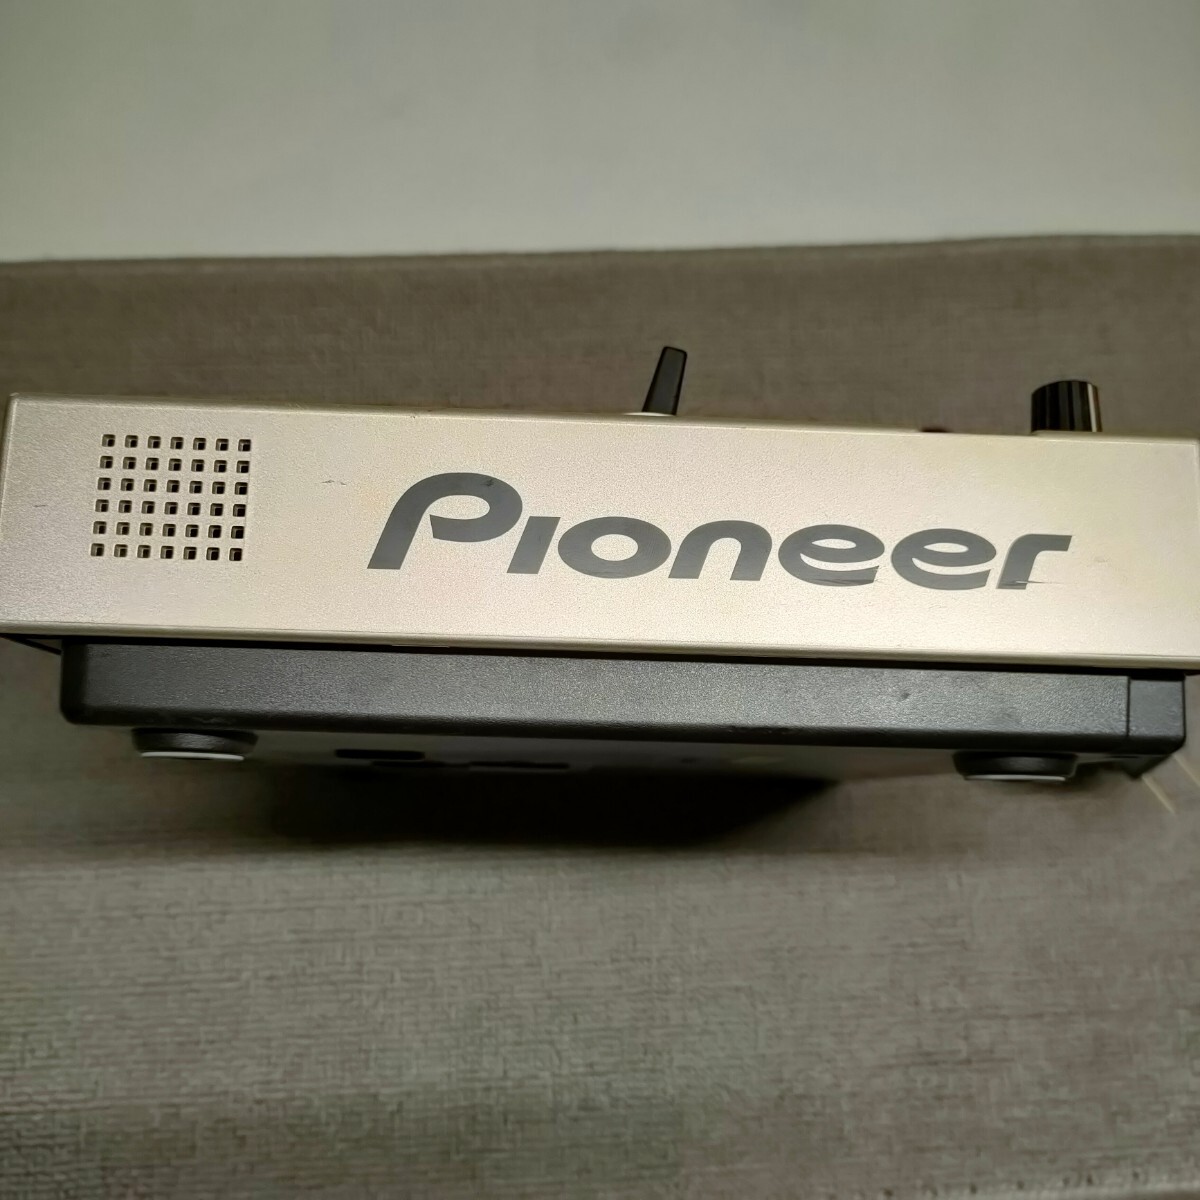 [ бесплатная доставка / быстрое решение ] Pioneer EFX-500 PERFORMANCE EFFECTOR DJ эффектор Pioneer M58e2-0064